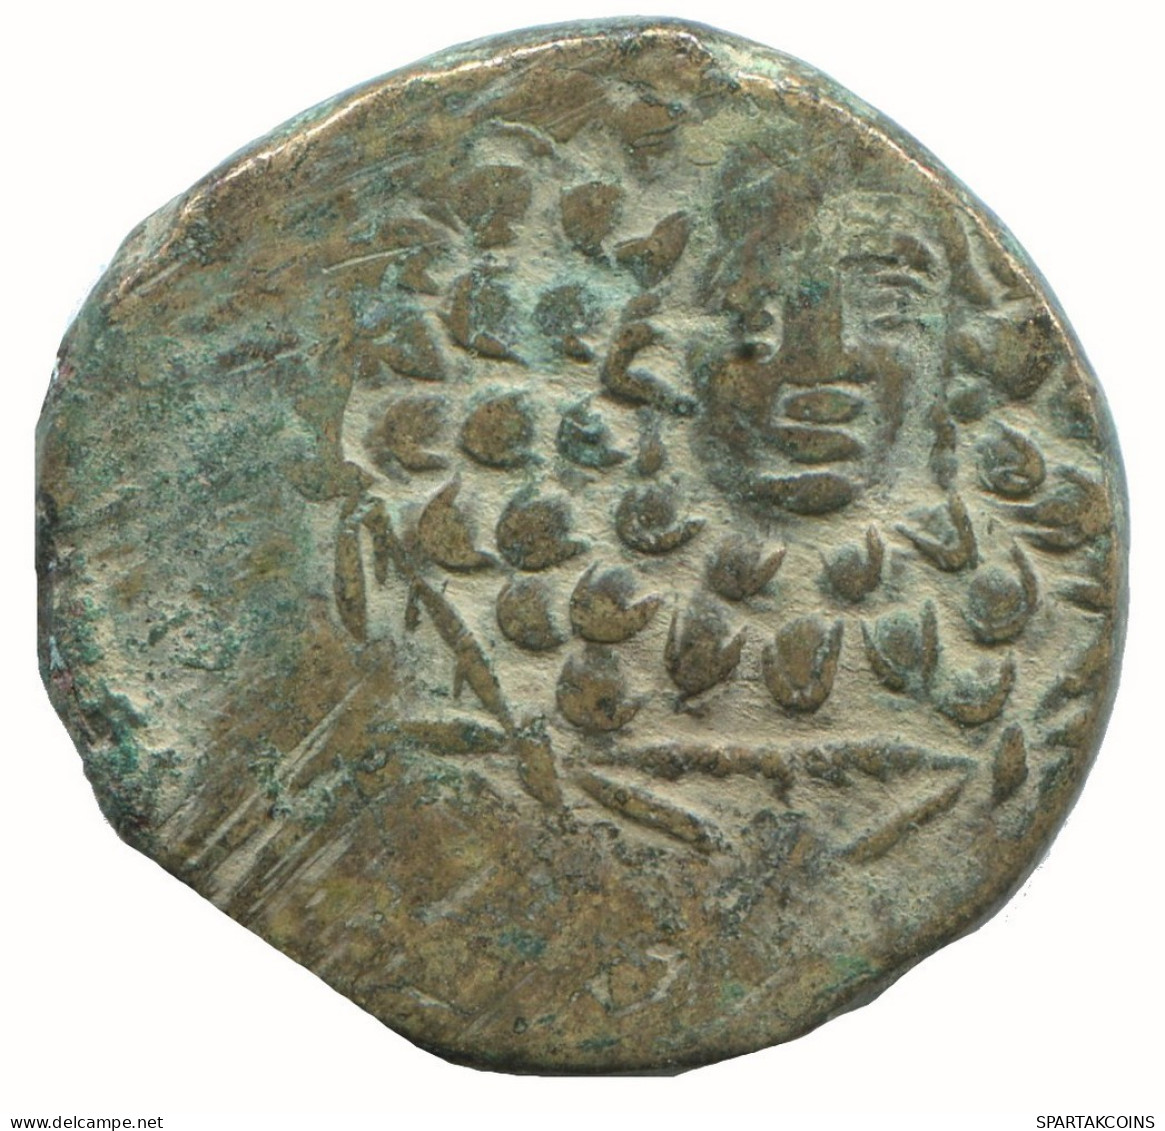 AMISOS PONTOS 100 BC Aegis With Facing Gorgon 6.9g/22mm #NNN1549.30.F.A - Greek